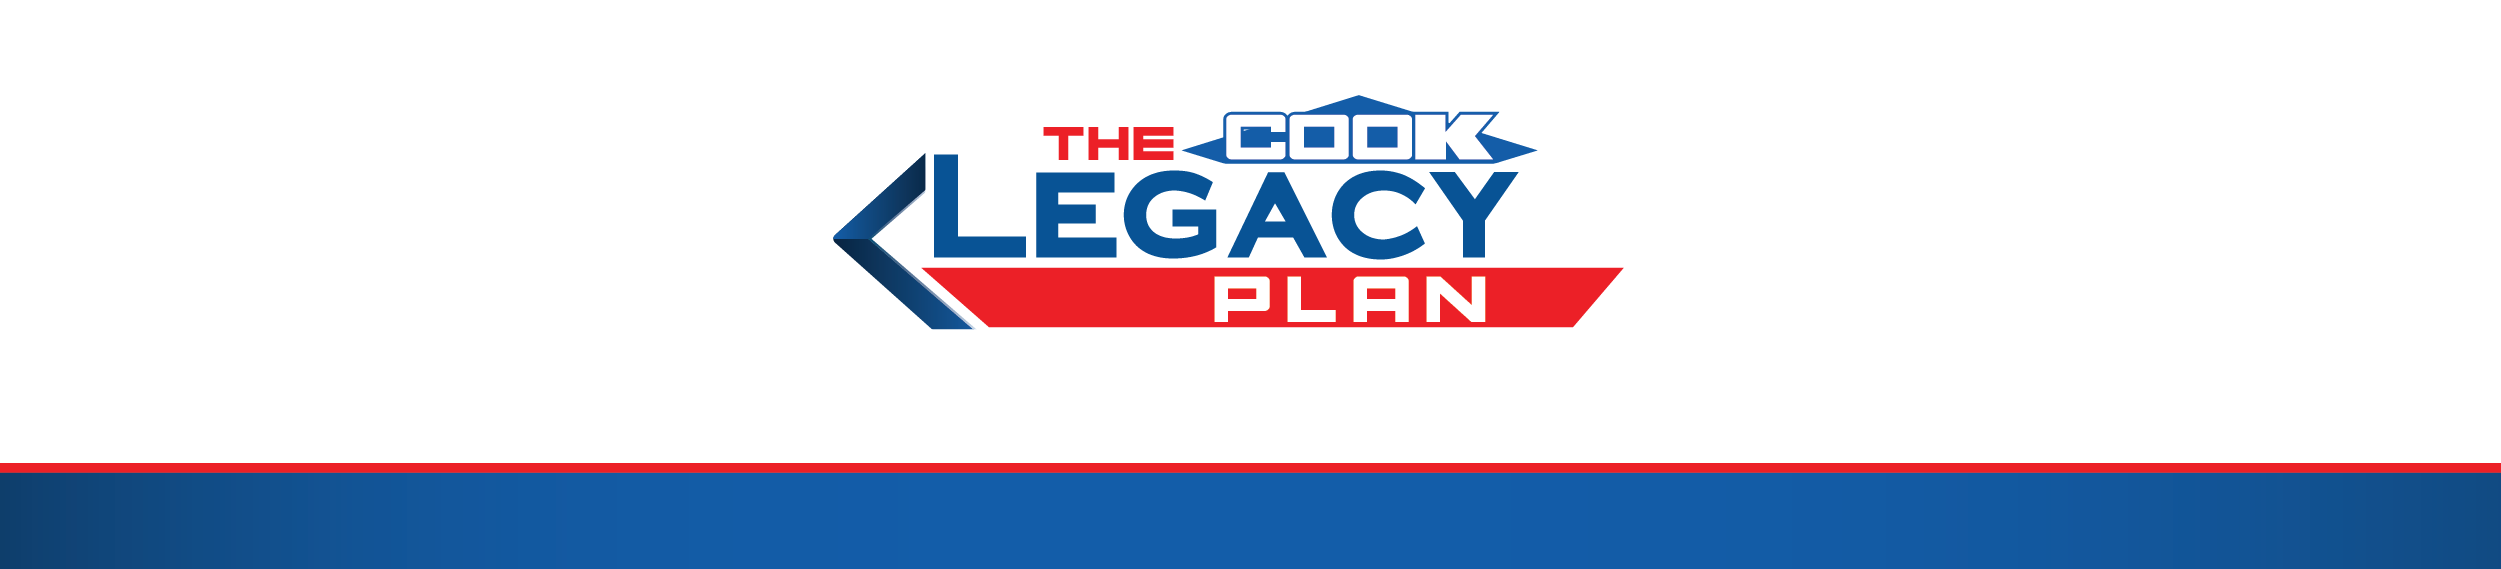 Legacy Plan